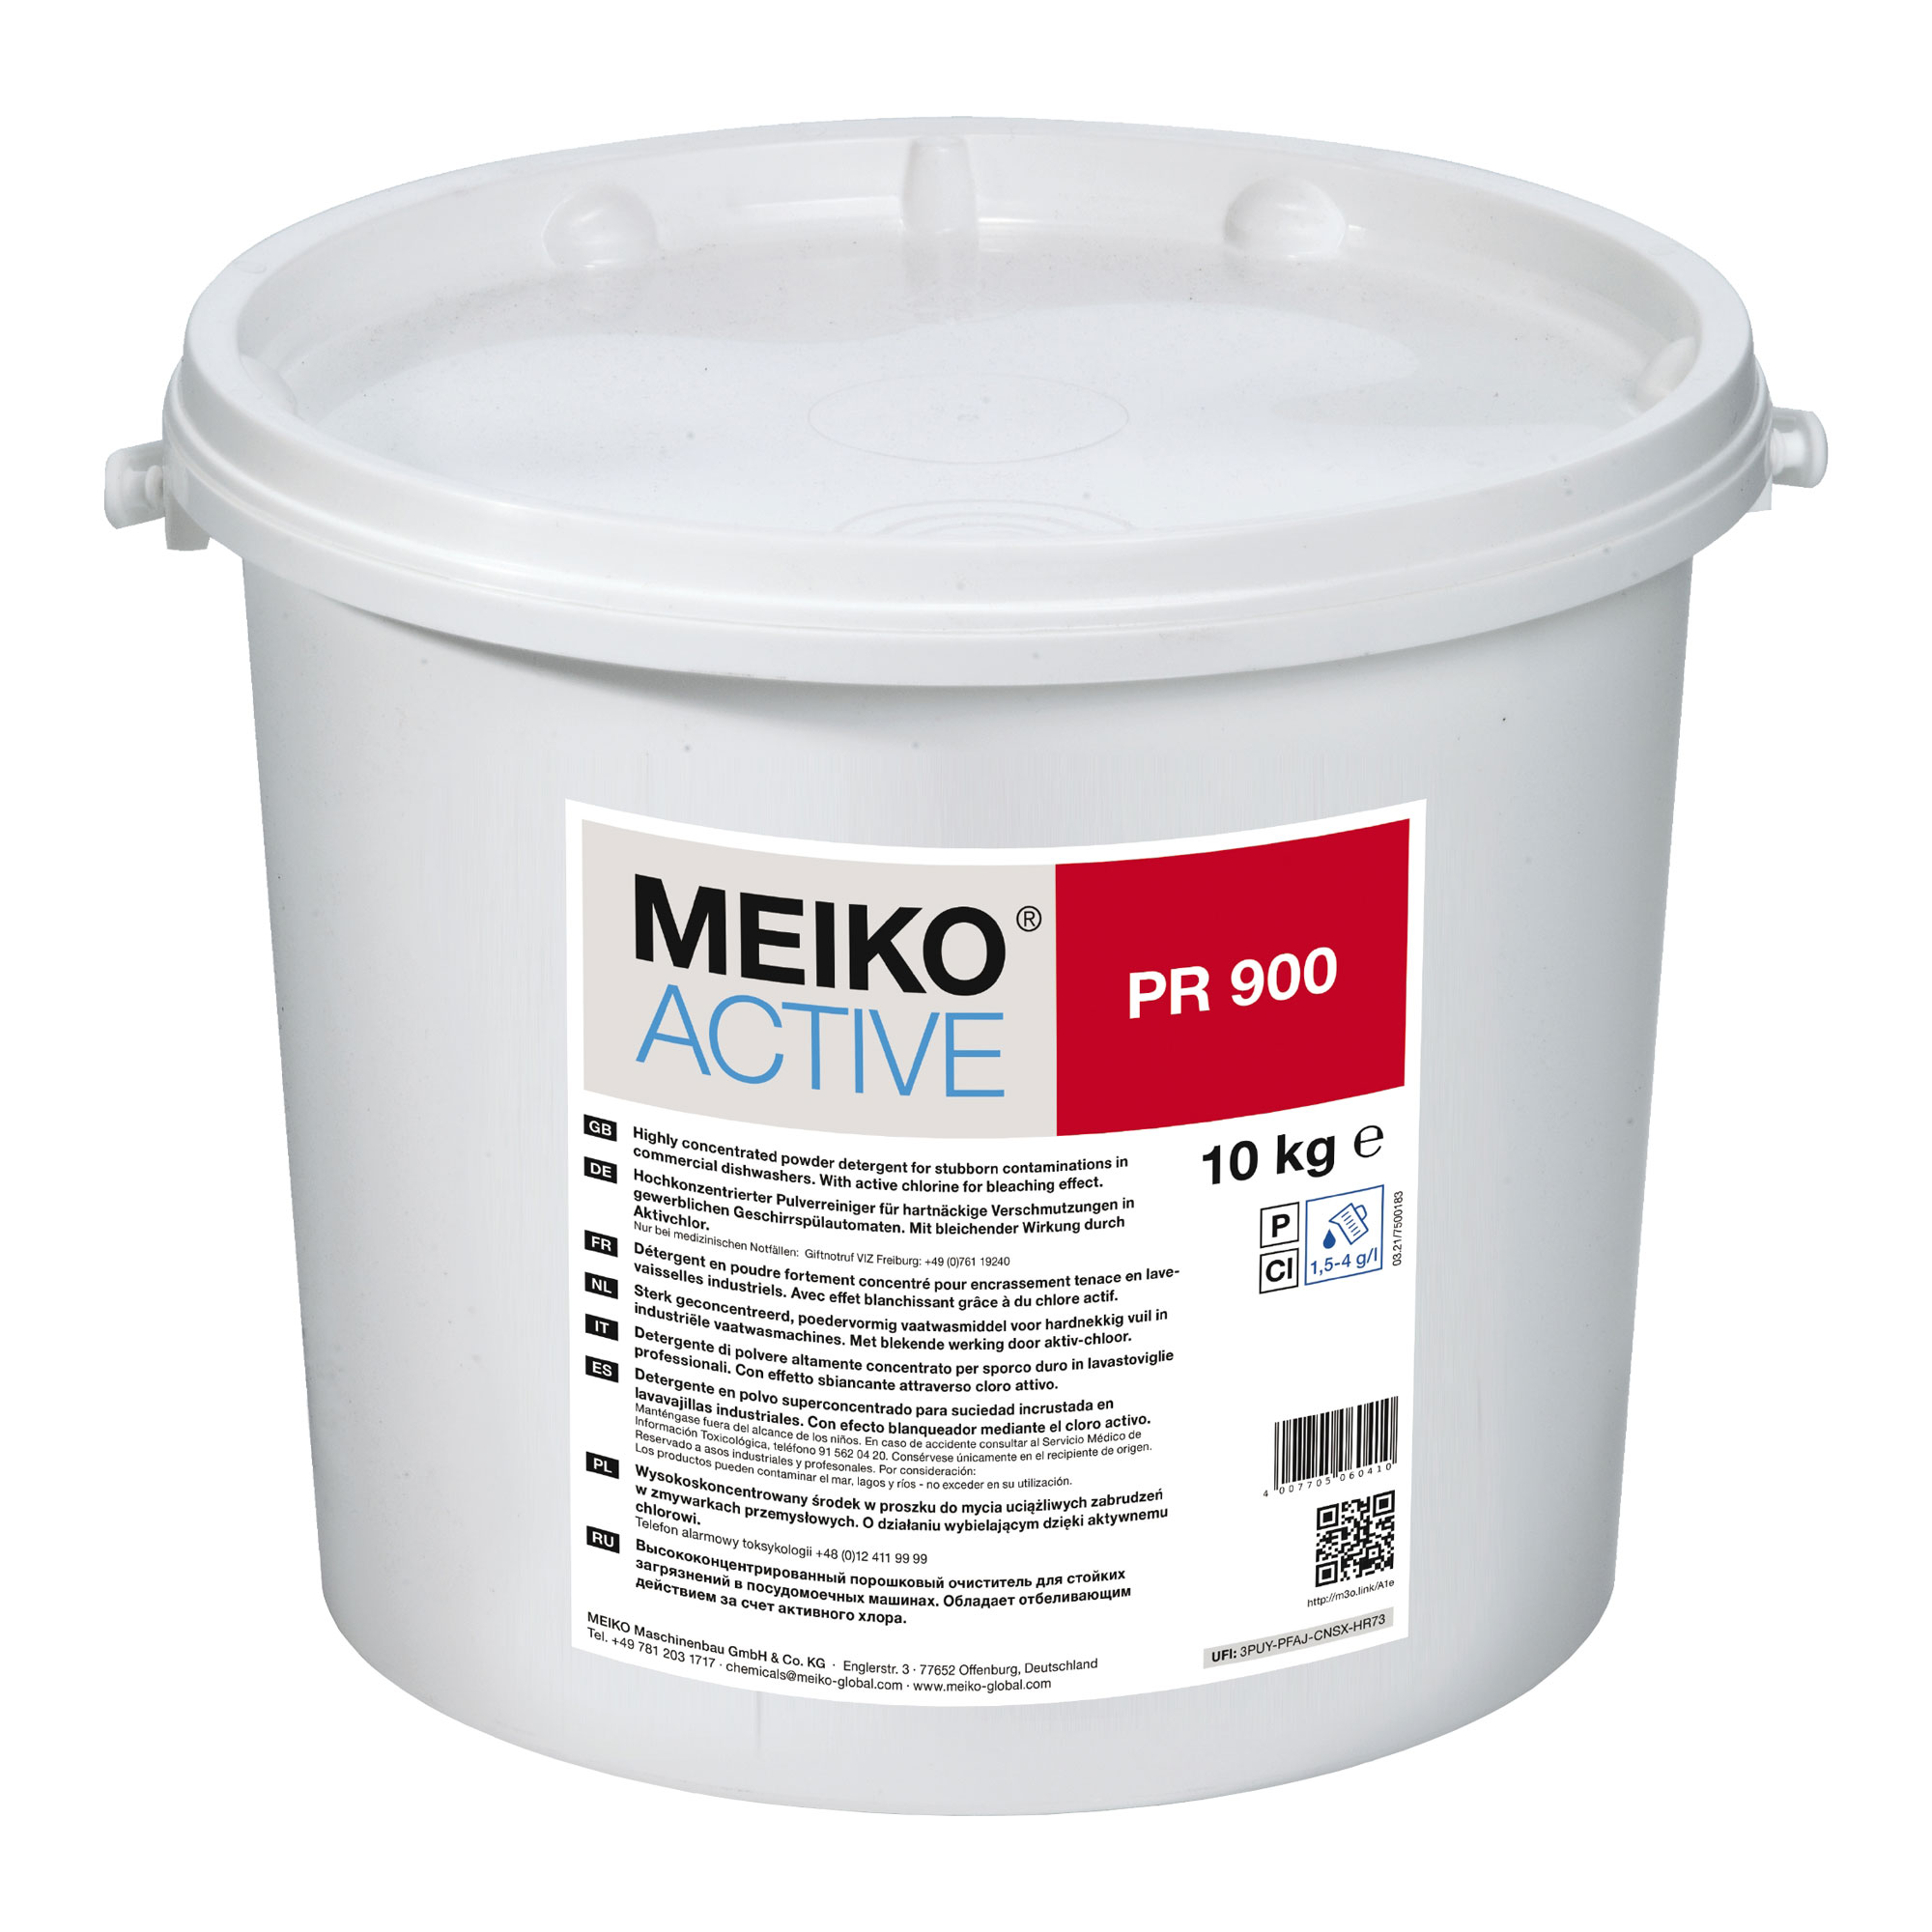 Meiko Active PR 900 Pulver-Spezialreiniger für hartnäckige Verschmutzungen